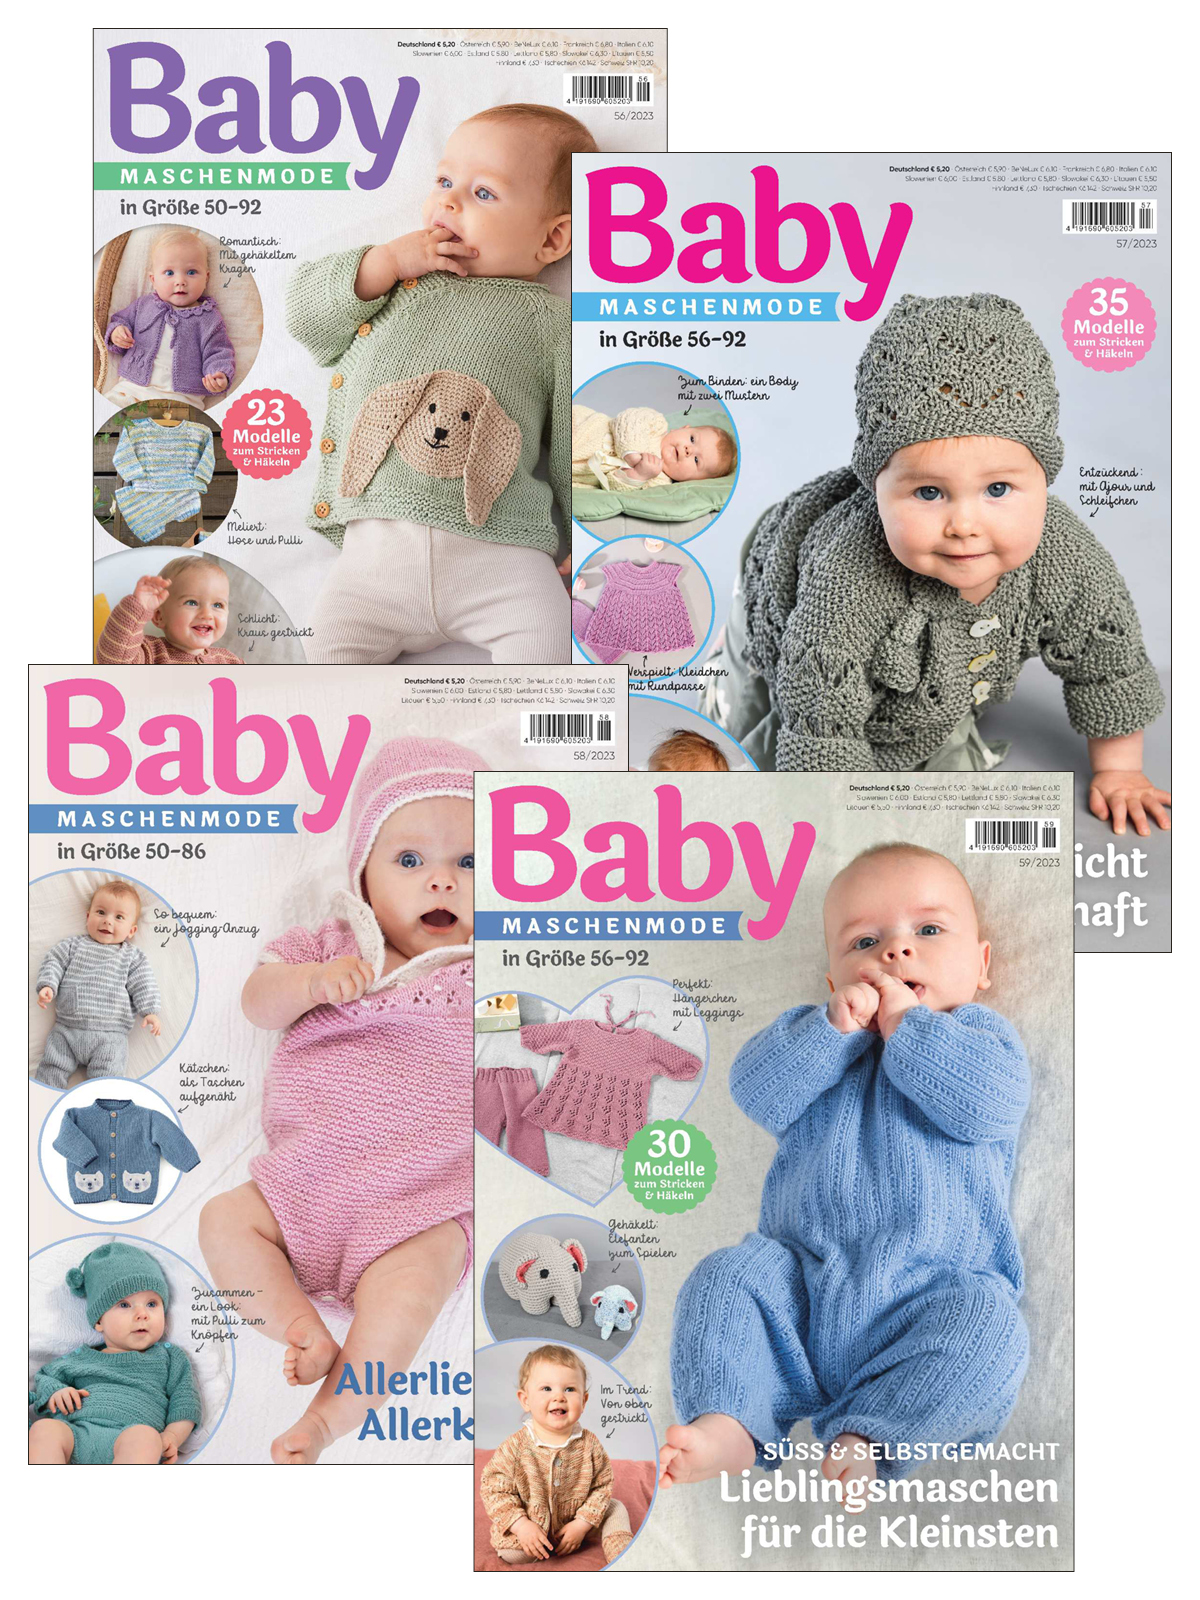 Baby Maschenmode E-Paper-Archiv 2023-alle Ausgaben als E-Paper-Sparpaket